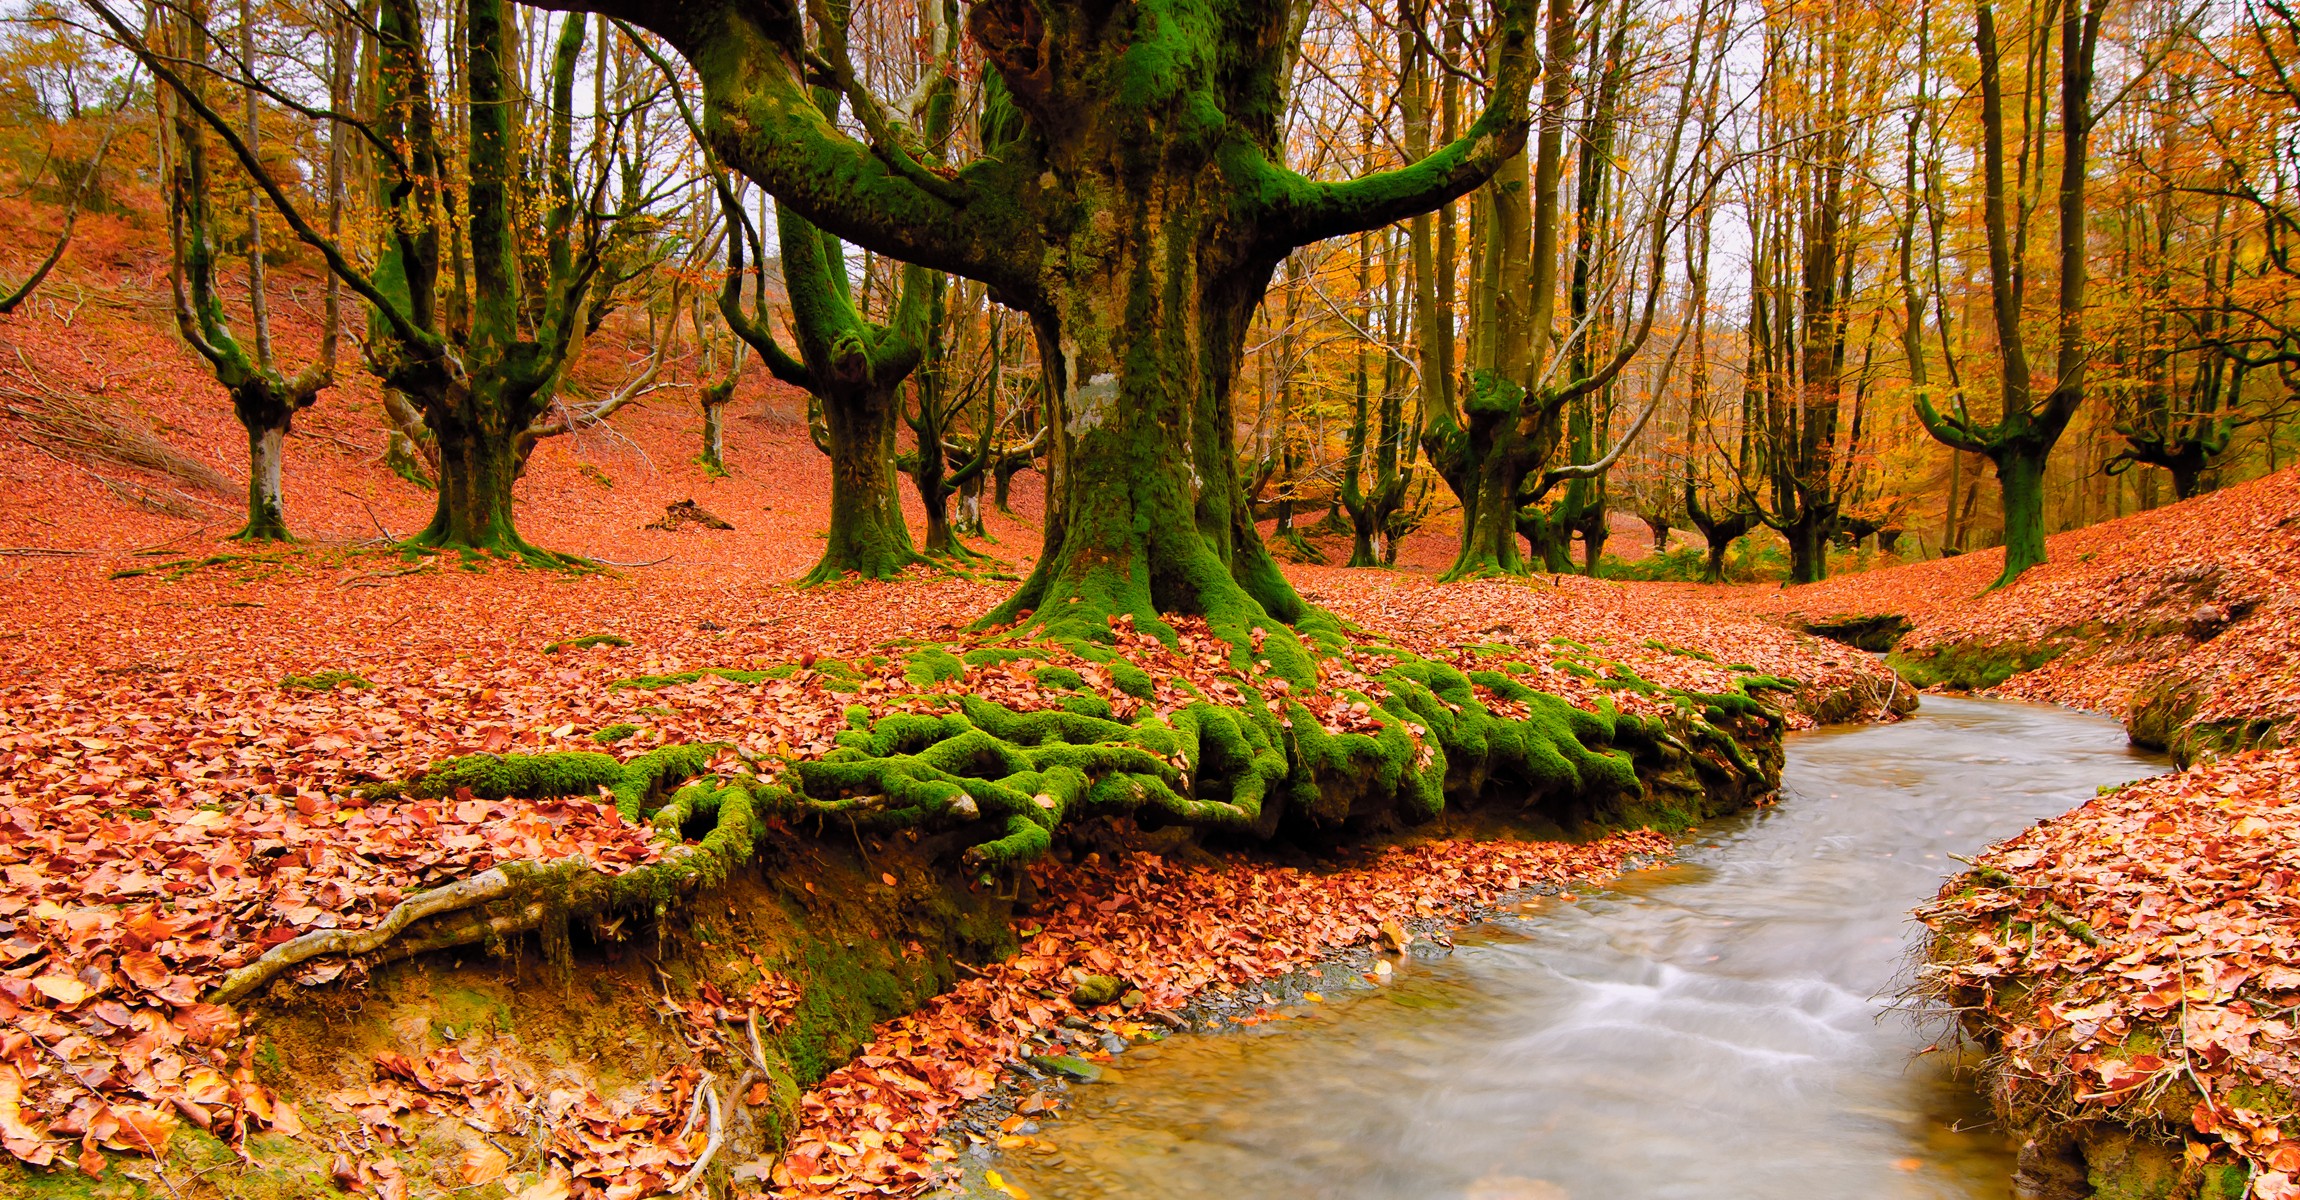 trees, autumn, leaves, streams, fallen leaves - desktop wallpaper